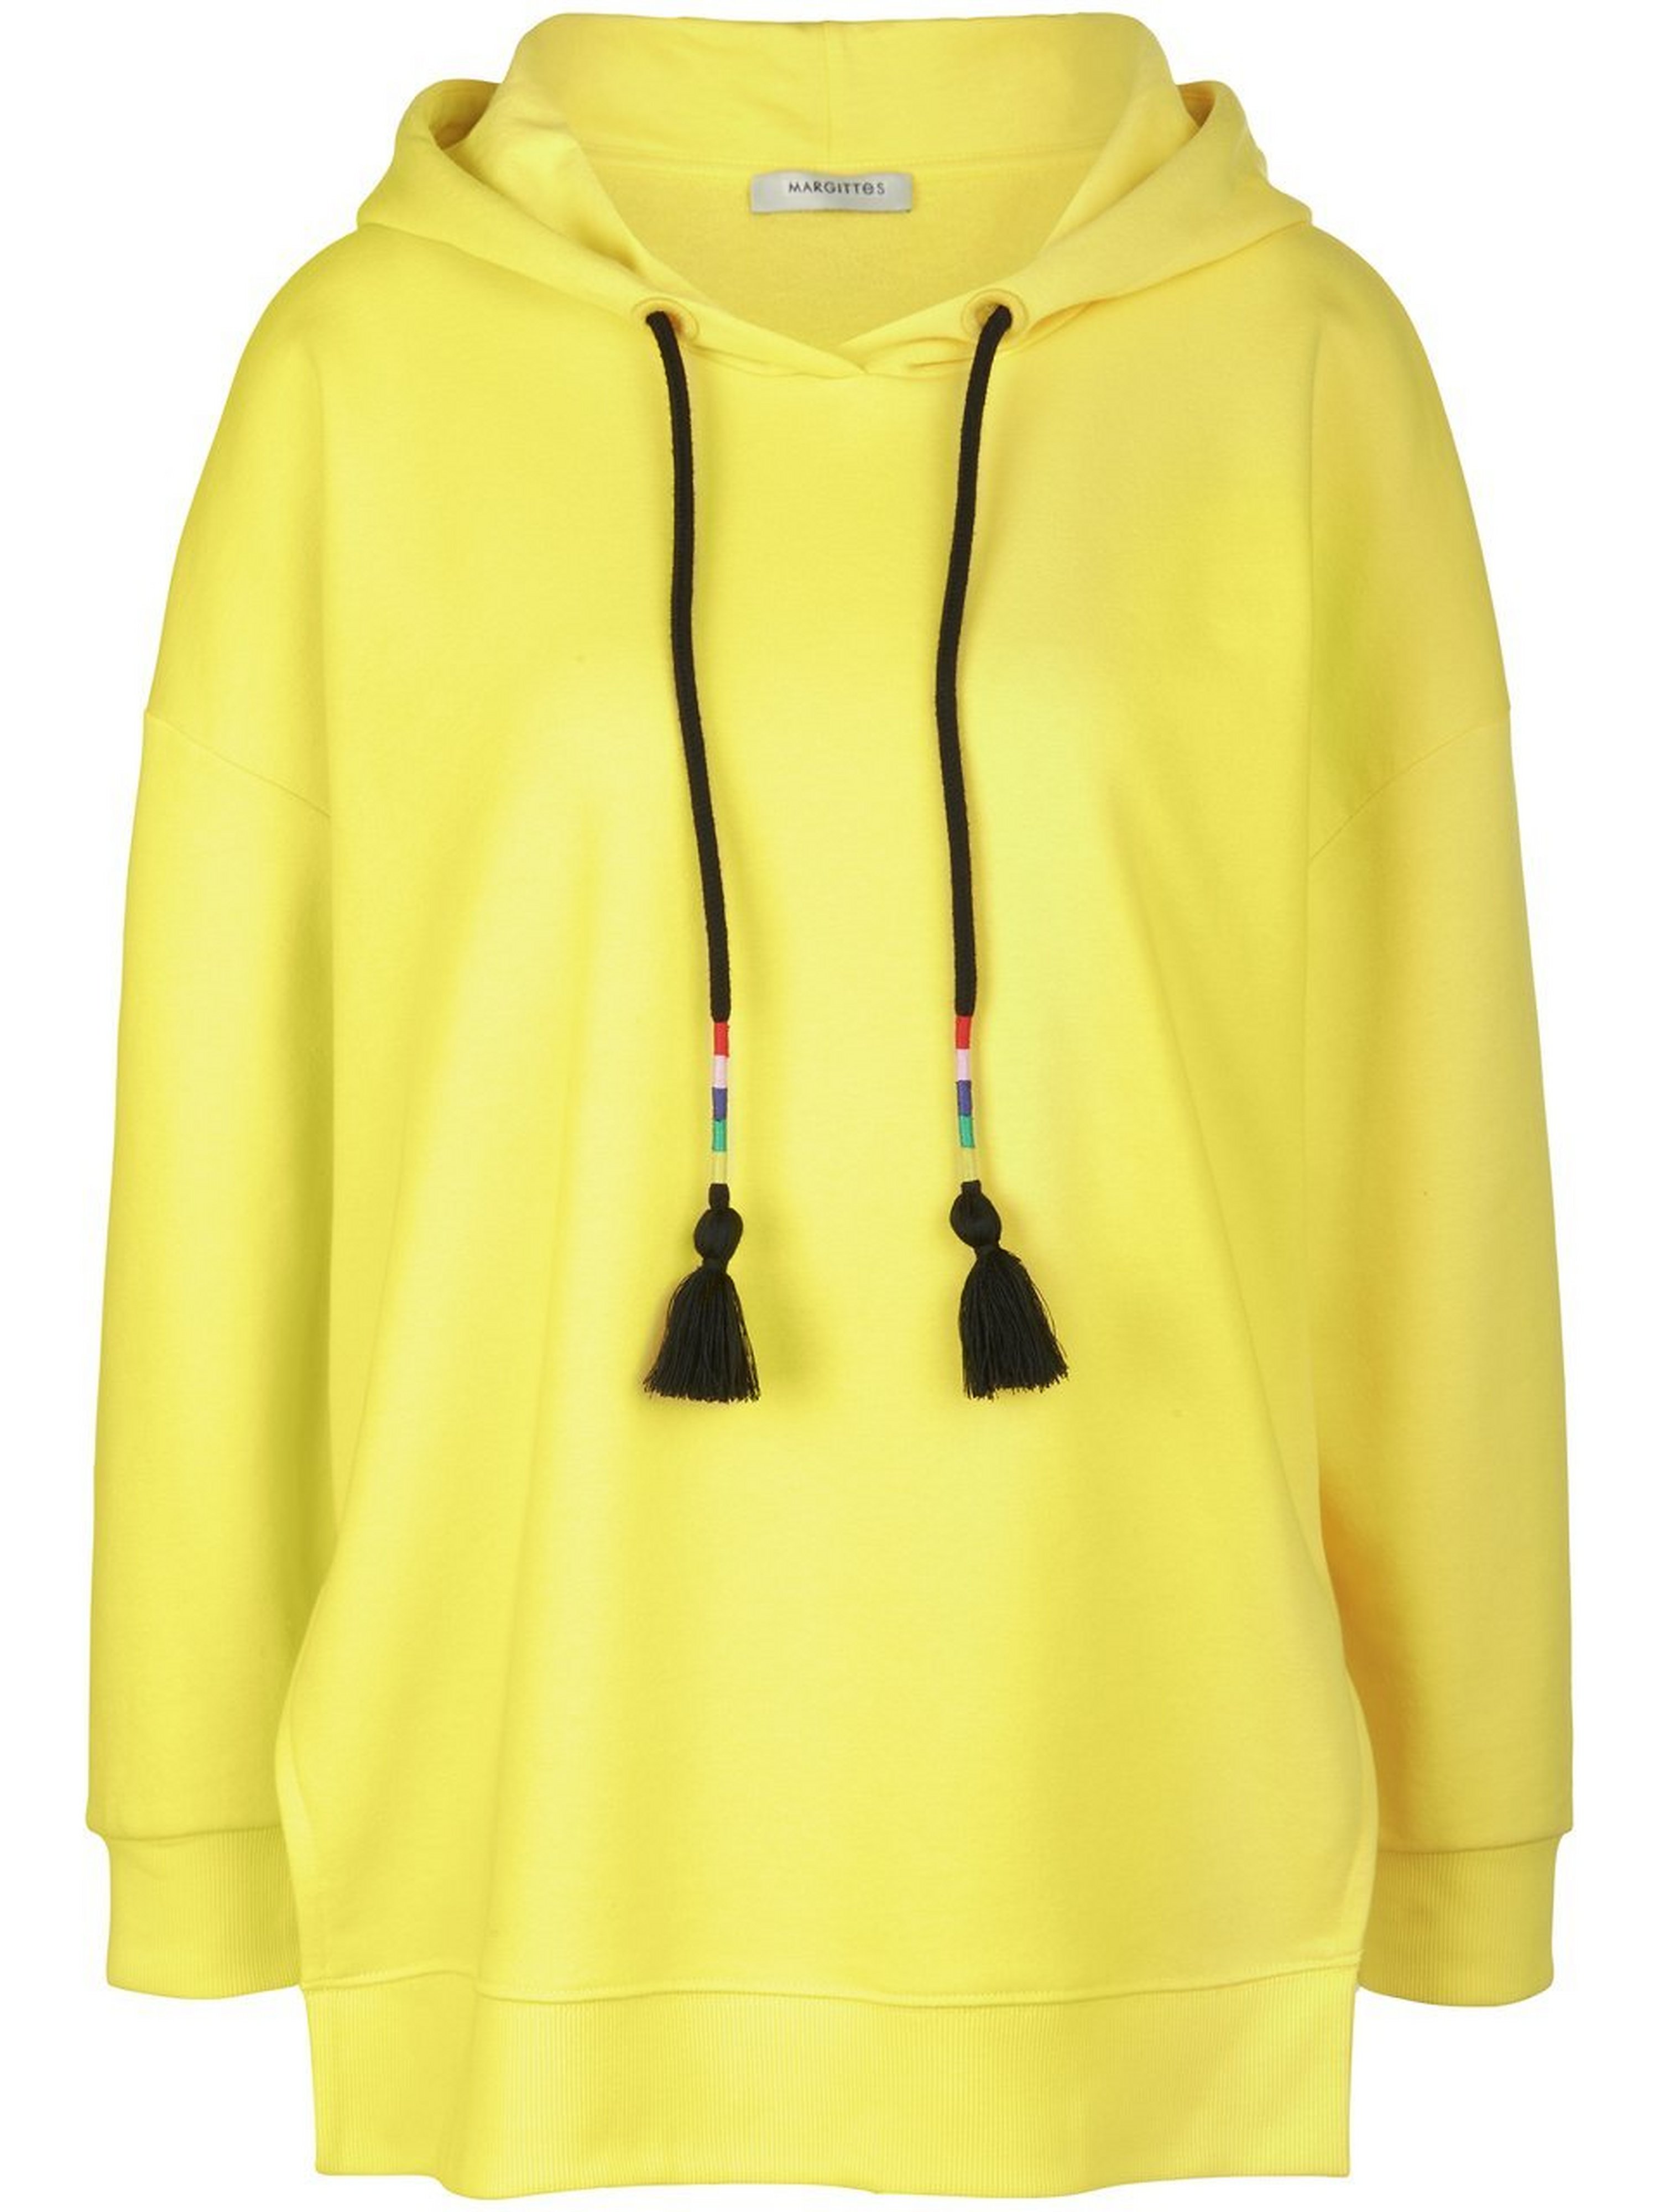 Sweatshirt capuchon Van Margittes geel